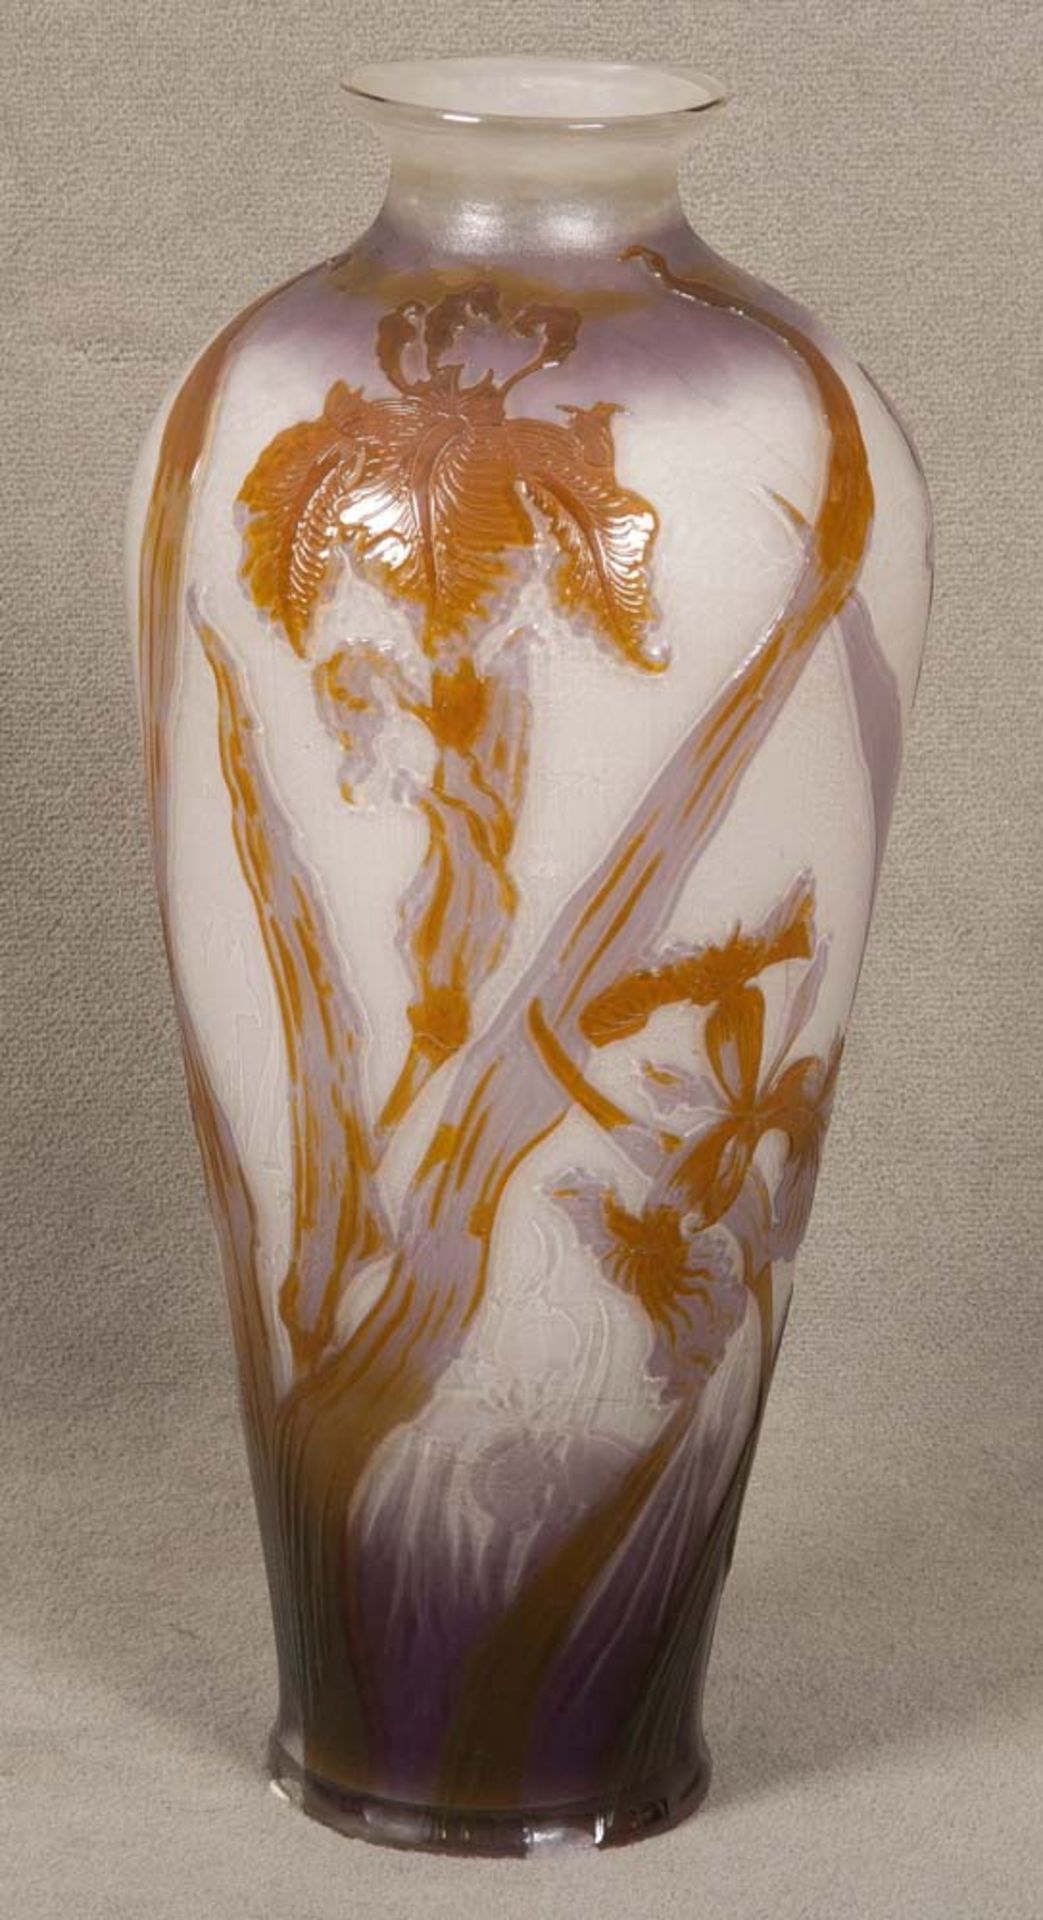 Jugendstil-Vase. Nancy, Émile Gallé um 1900. Feuerpoliertes Glas, farbig überfangen, umlaufend